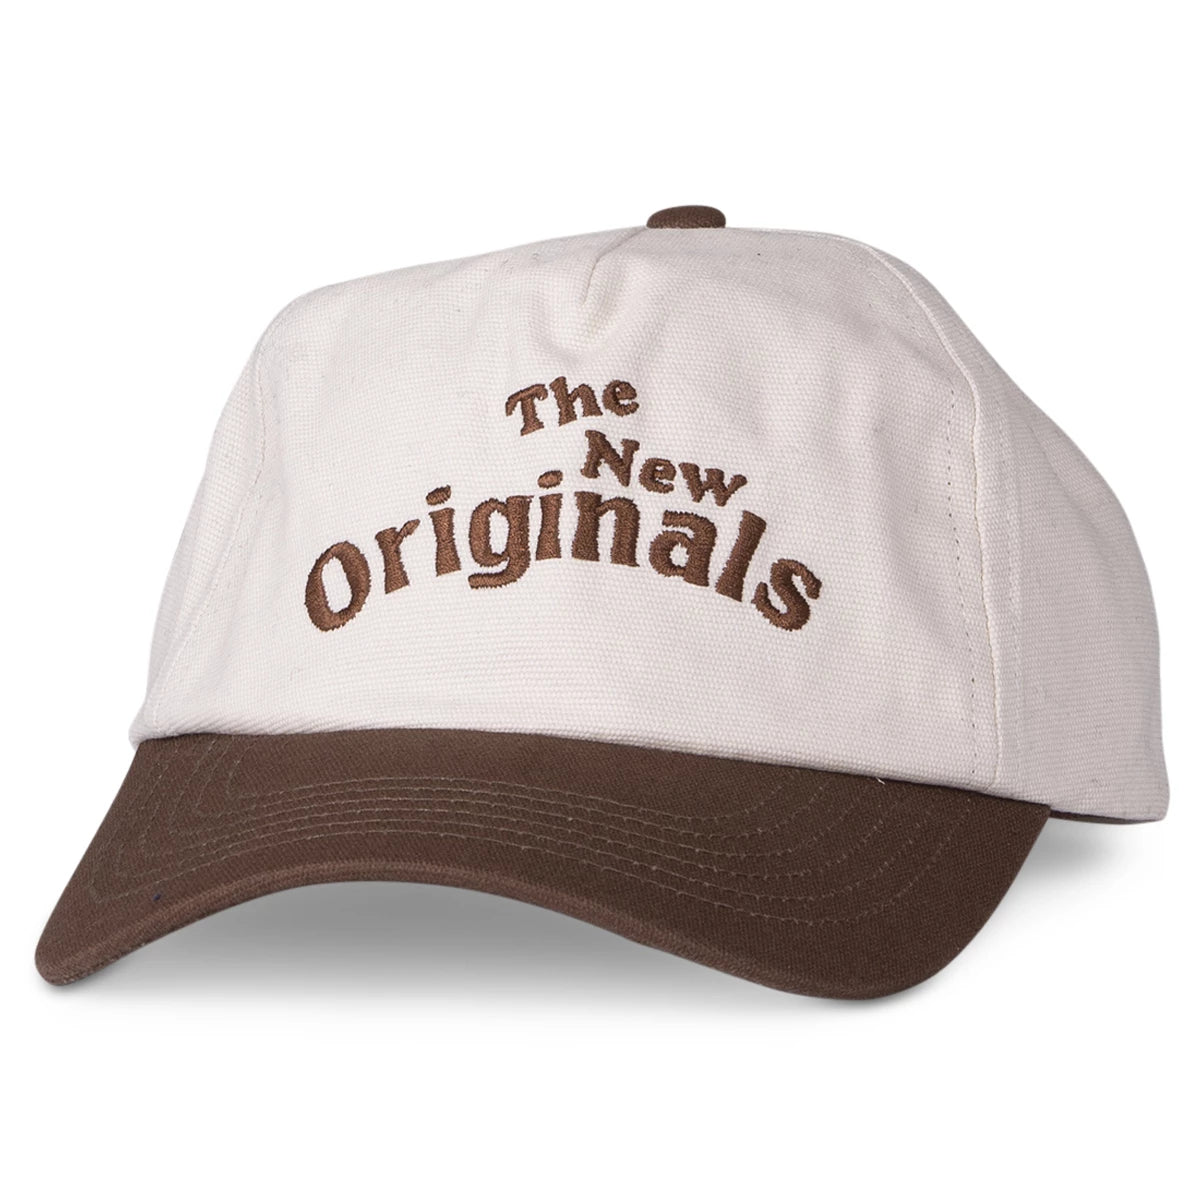 The New Originals Pet off-white met bruin | Workman cap